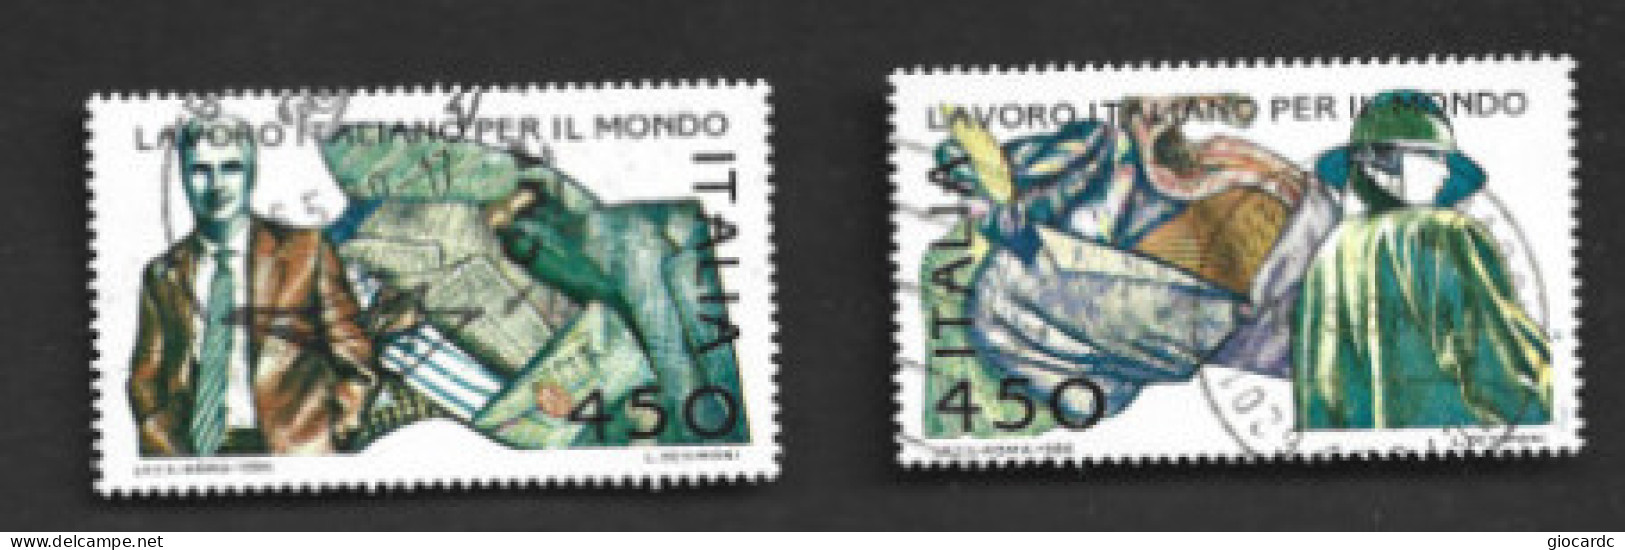 ITALIA REPUBBLICA  - SA 1776.1767  - 1986  LAVORO ITALIANO: MODA  (COMPLET SET OF 2)  -  USATO  -  RIF. 30813 - 1981-90: Afgestempeld